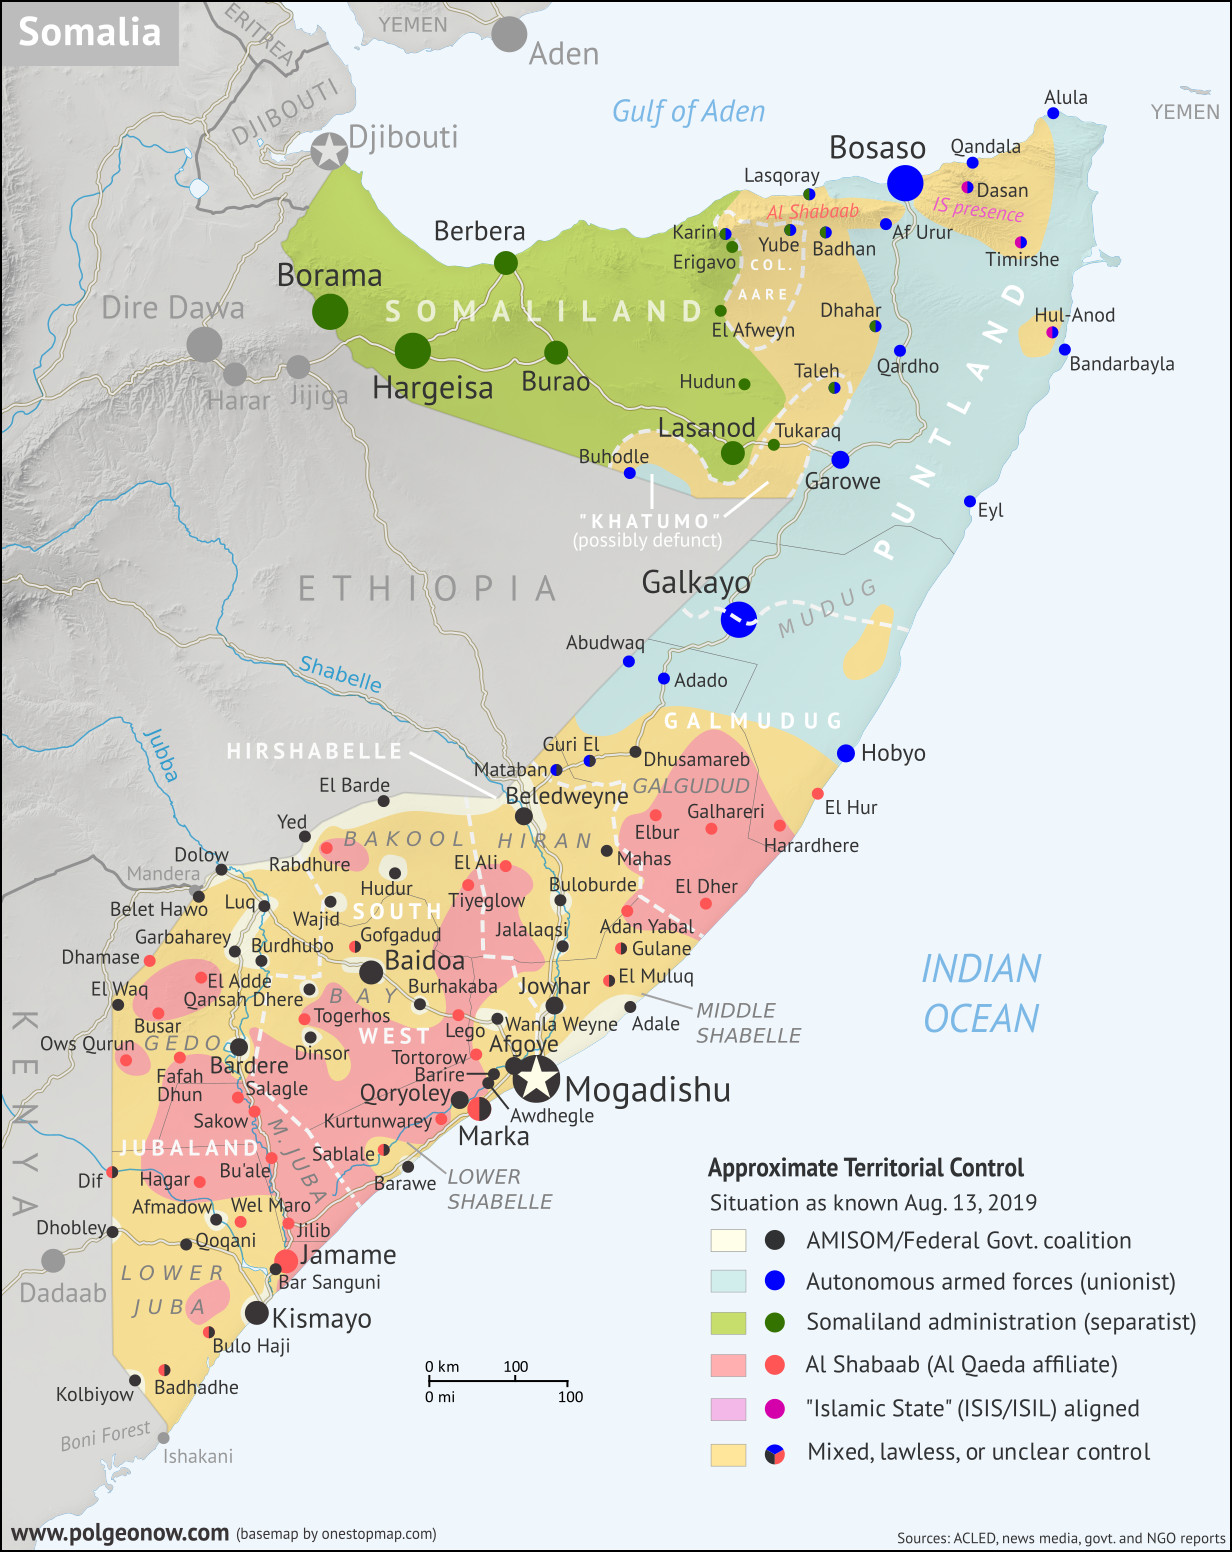 2019-08-13_who-controls-somalia-map-with-states - kopia.jpg